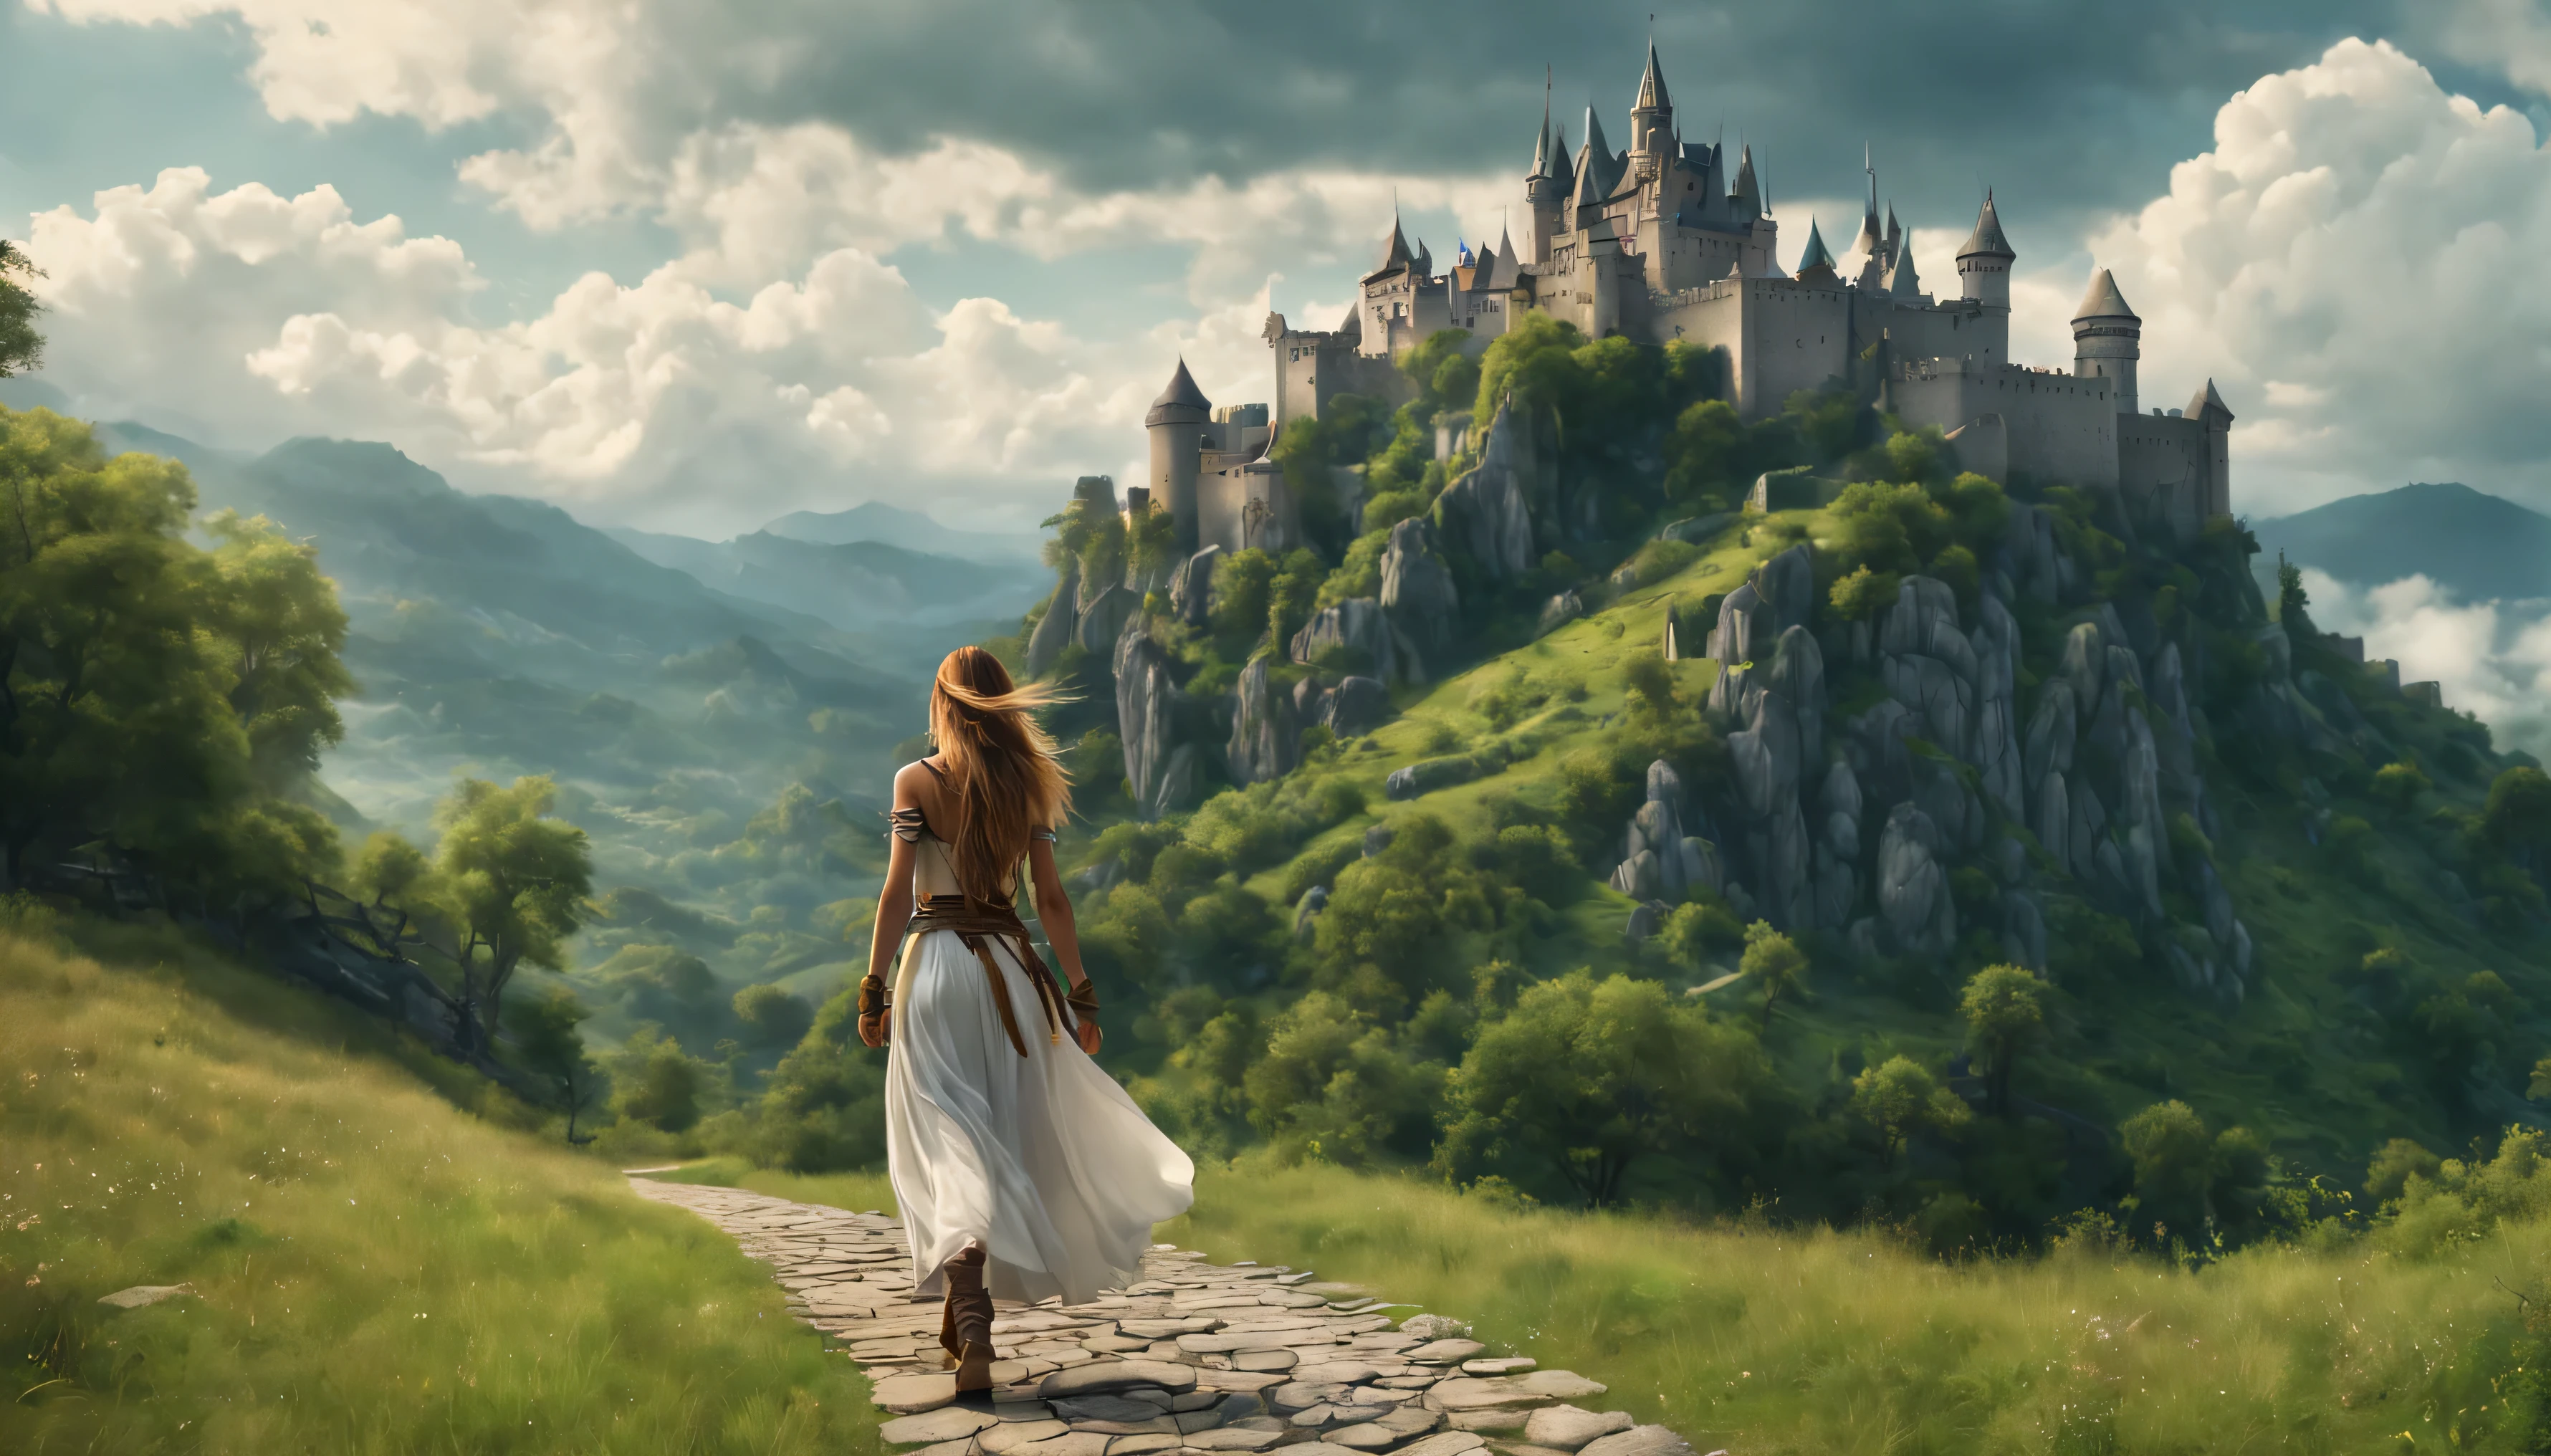 側面圖: 一個長髮的女武士沿著小路行走, 看著山上的城堡, 神秘的夏日氛圍, 厚厚的雲朵低低地掛在山腳下, 美麗的風景, 荒誕, 傑作, 高細節, 難的, 8K, 4KUHD, 高動態範圍, 影院级品质